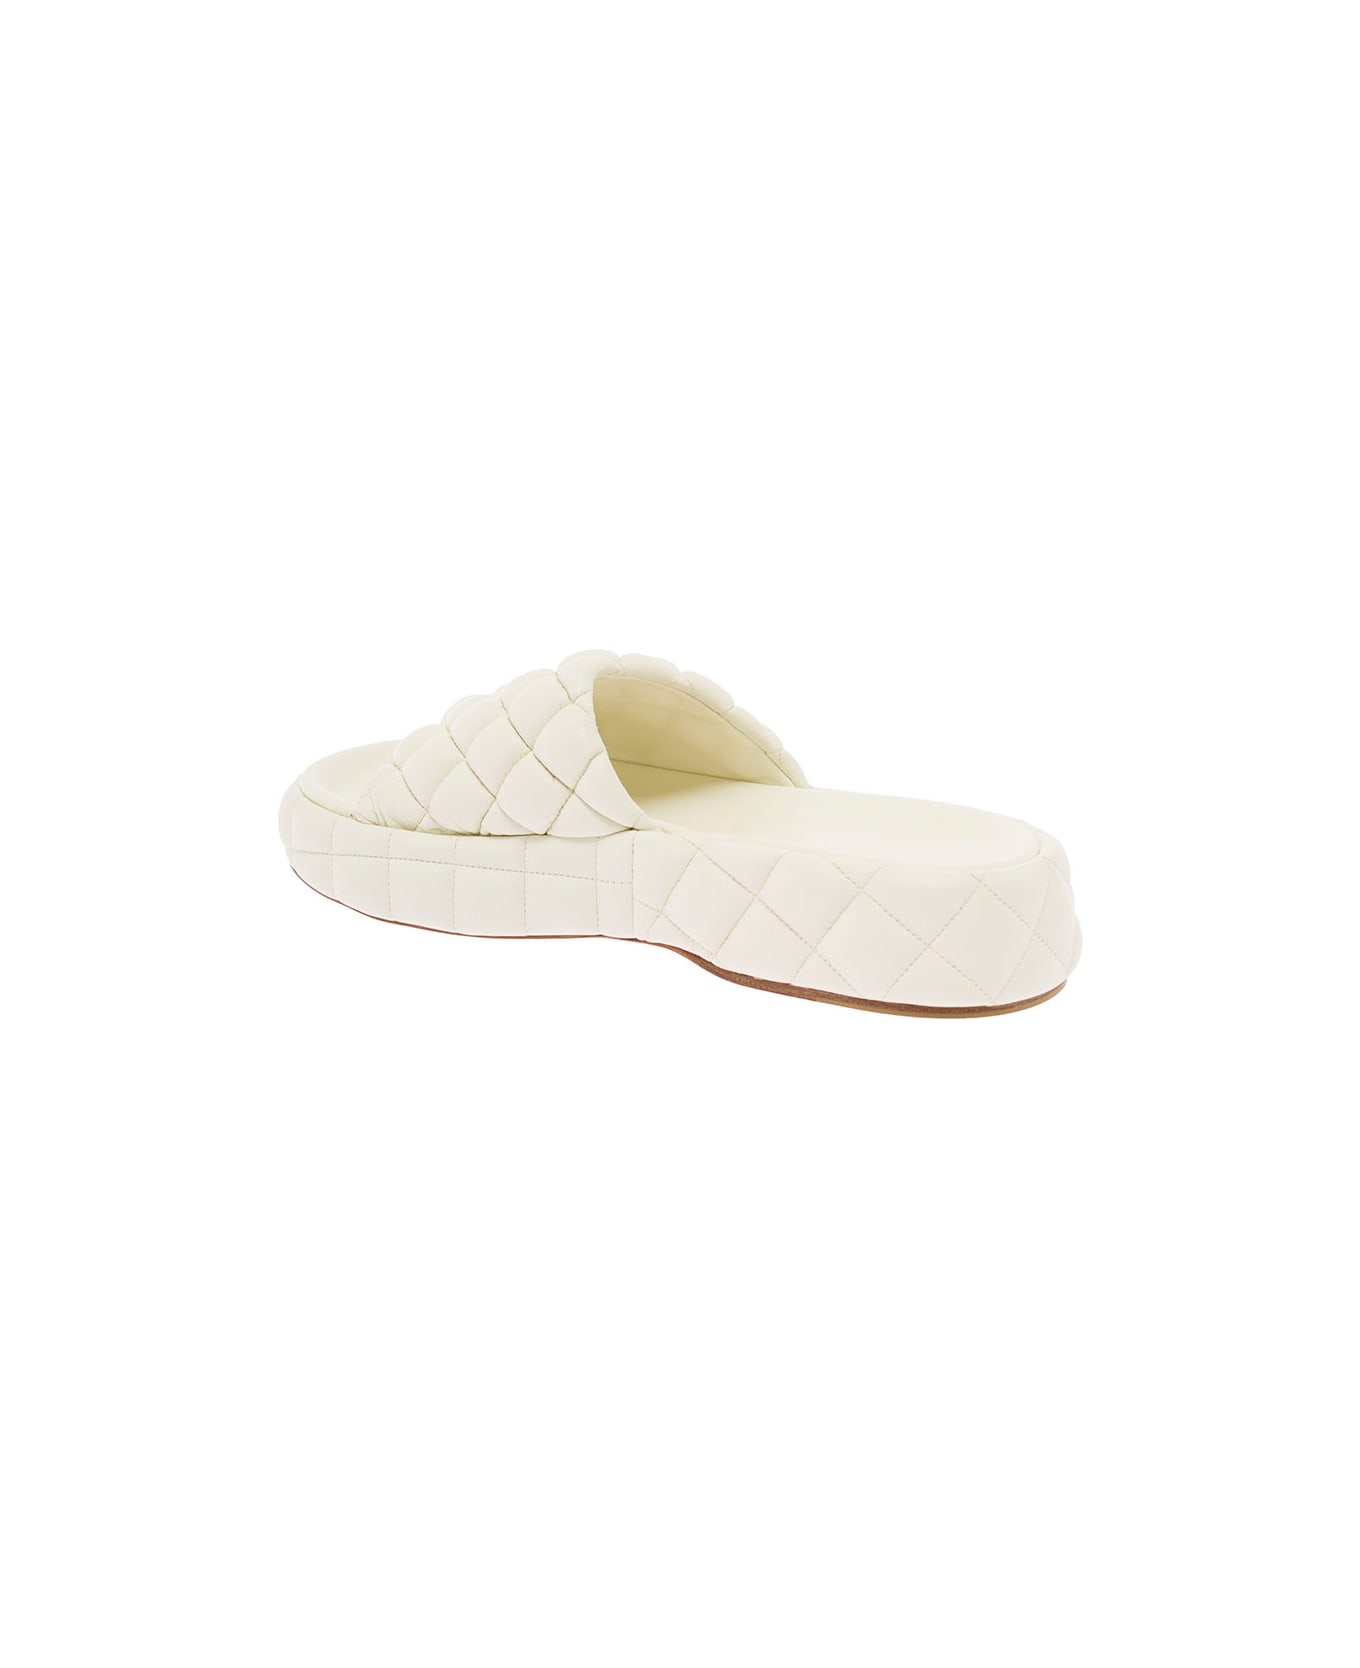 Bottega Veneta White Quilted Leather Slide Sandals Bottega Veneta Woman - White